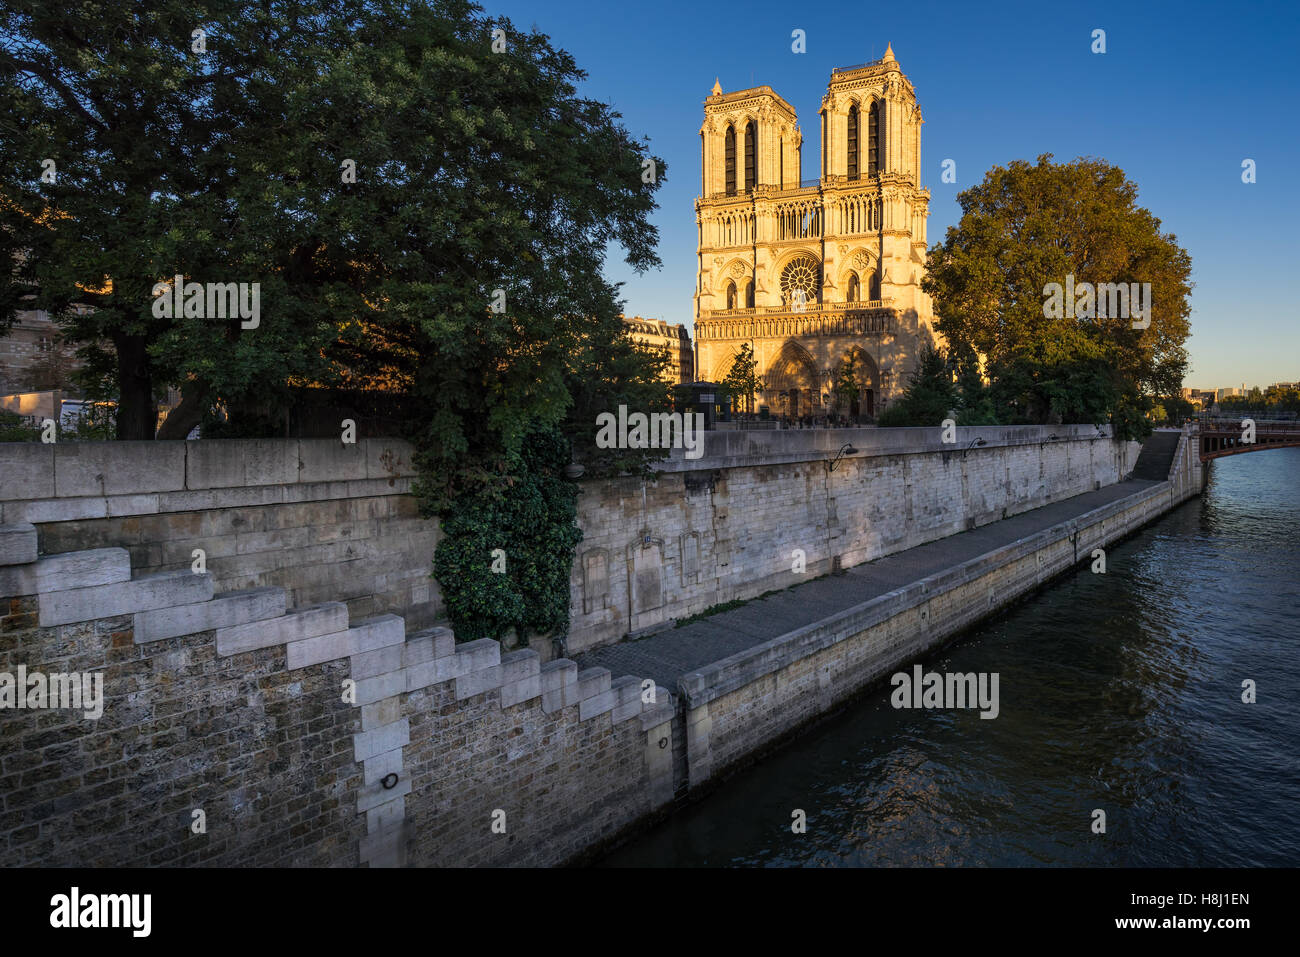 Notre Dame de Paris cathédrale au coucher du soleil avec la Seine sur l'Ile de La Cité. 4ème arrondissement, Paris, France Banque D'Images